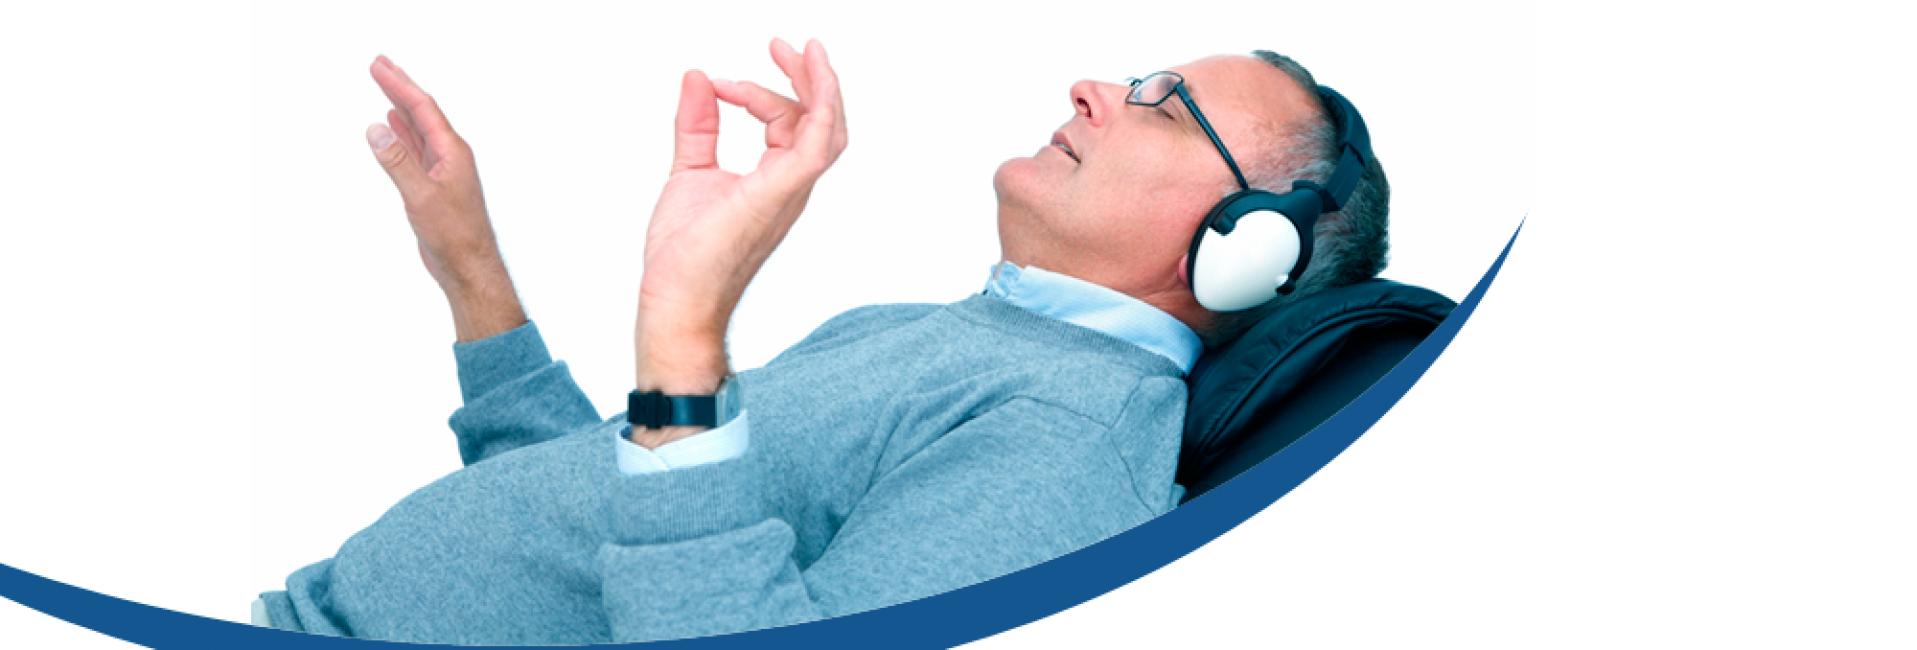 Een man liggend die naar muziek luistert met een koptelefoon